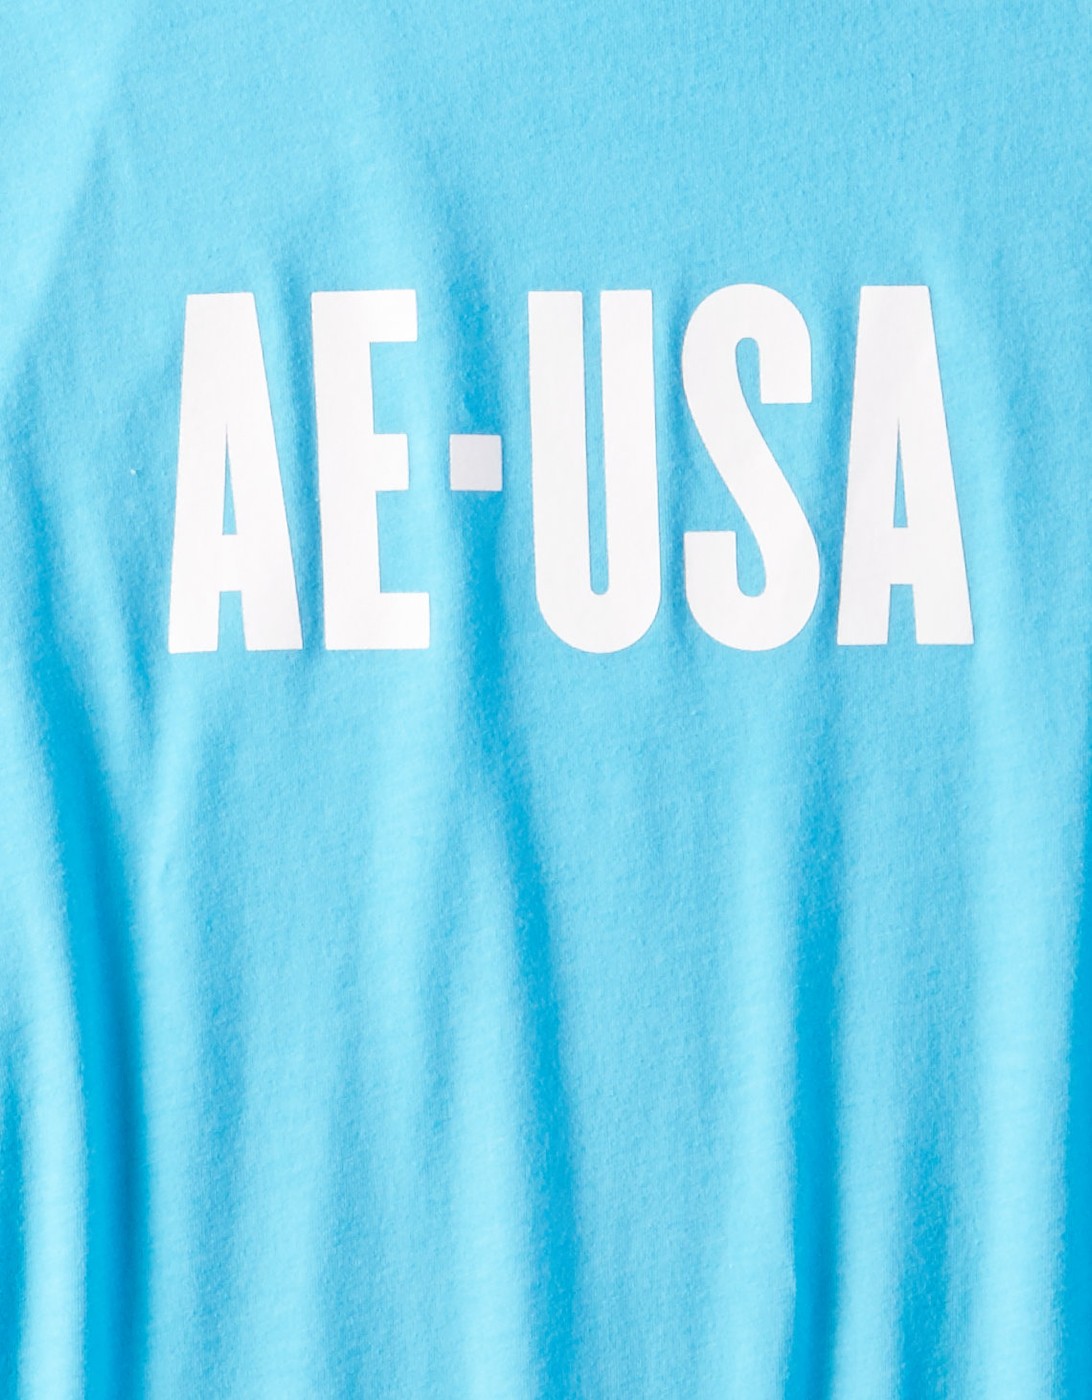 Голубая футболка - мужская футболка American Eagle, M, M